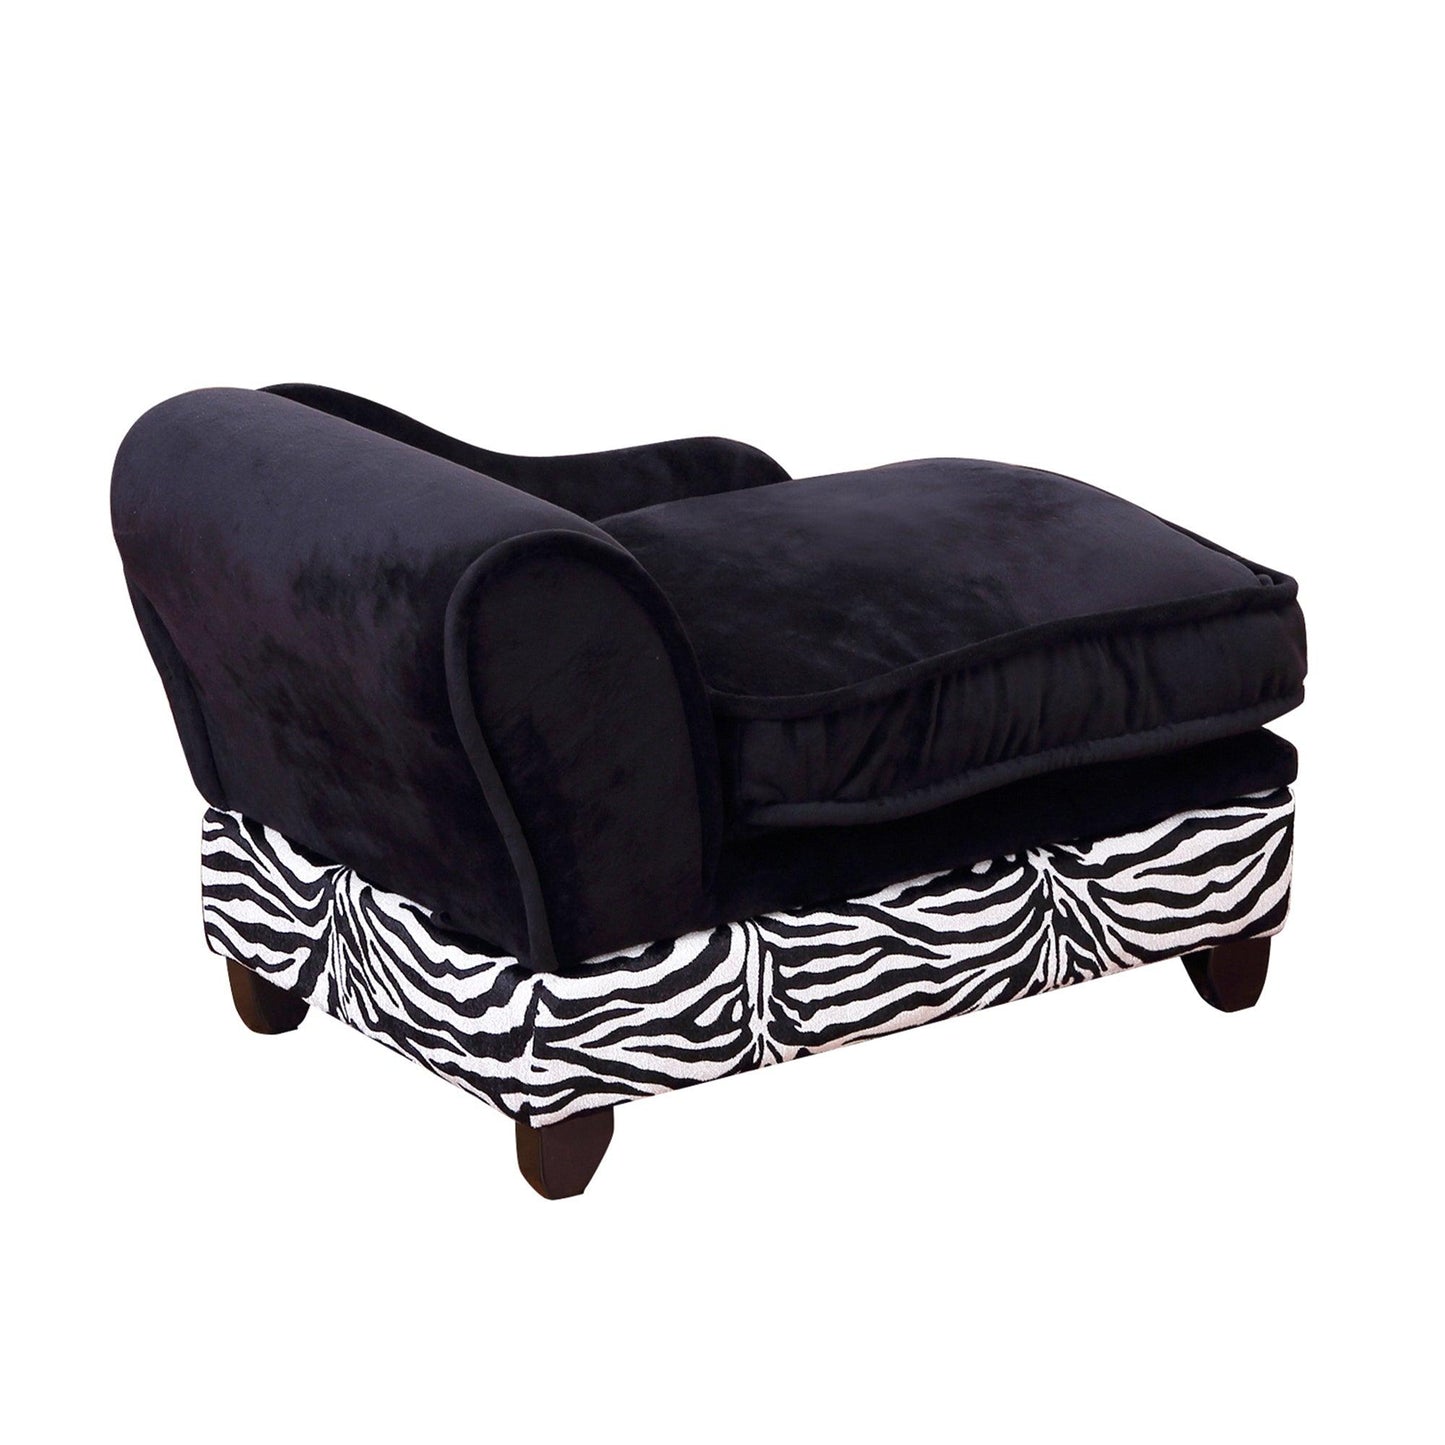 PawHut Dog Sofa Elevated Pet Chair Cat Couch w/ Hidden Under Seat Storage - ALL4U RETAILER LTD